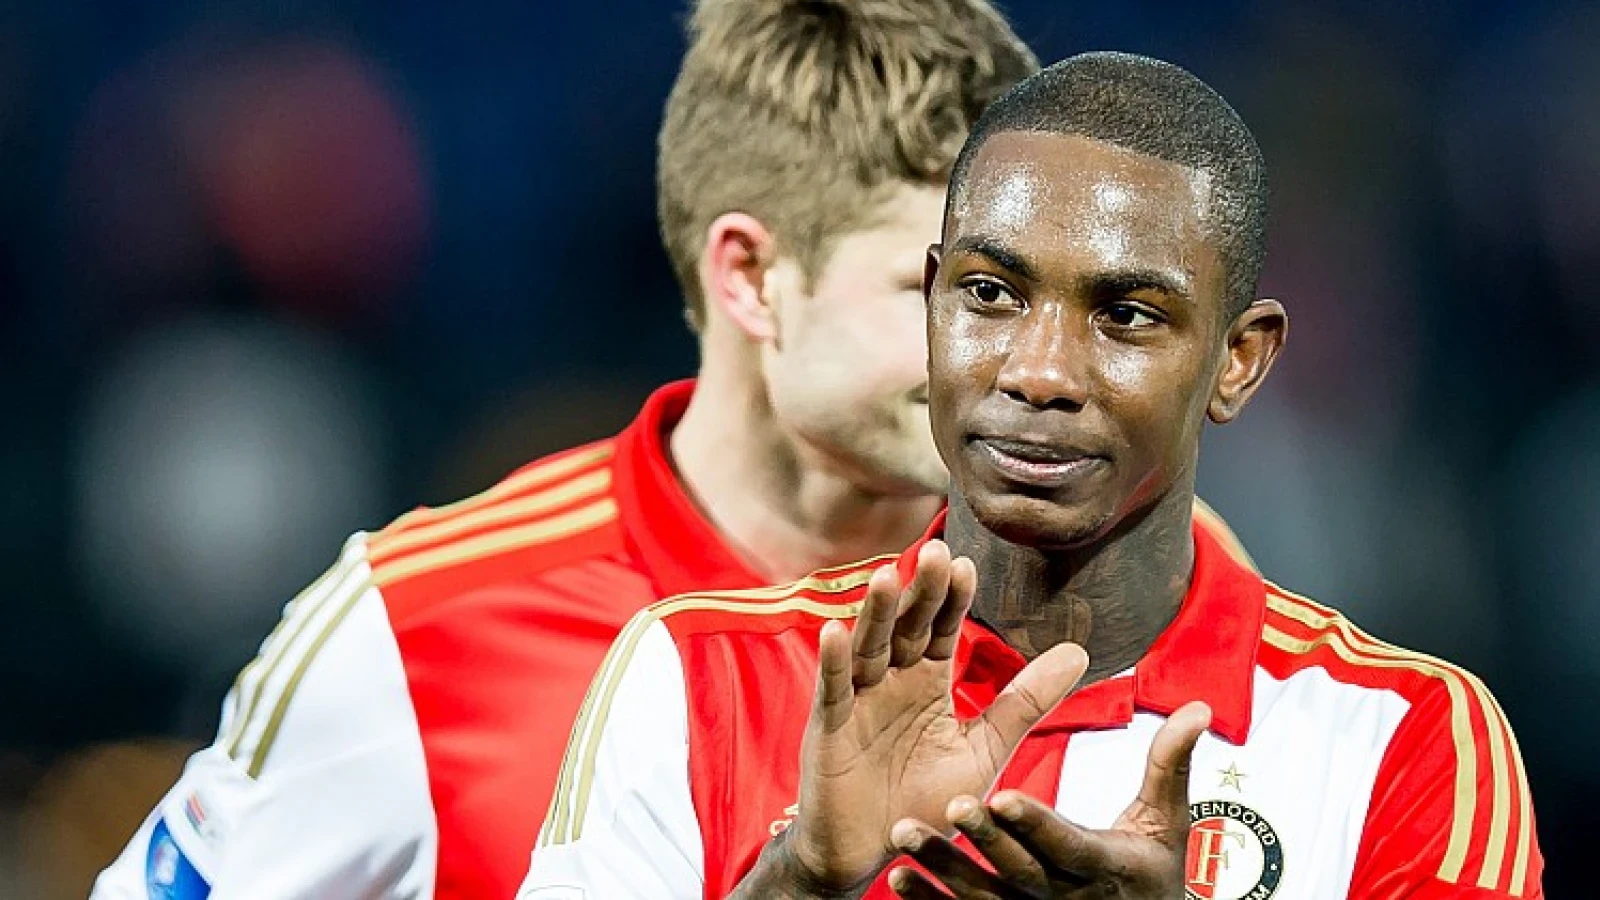 Feyenoorder in top 5 'Meest actieve dribbelaar' dit seizoen